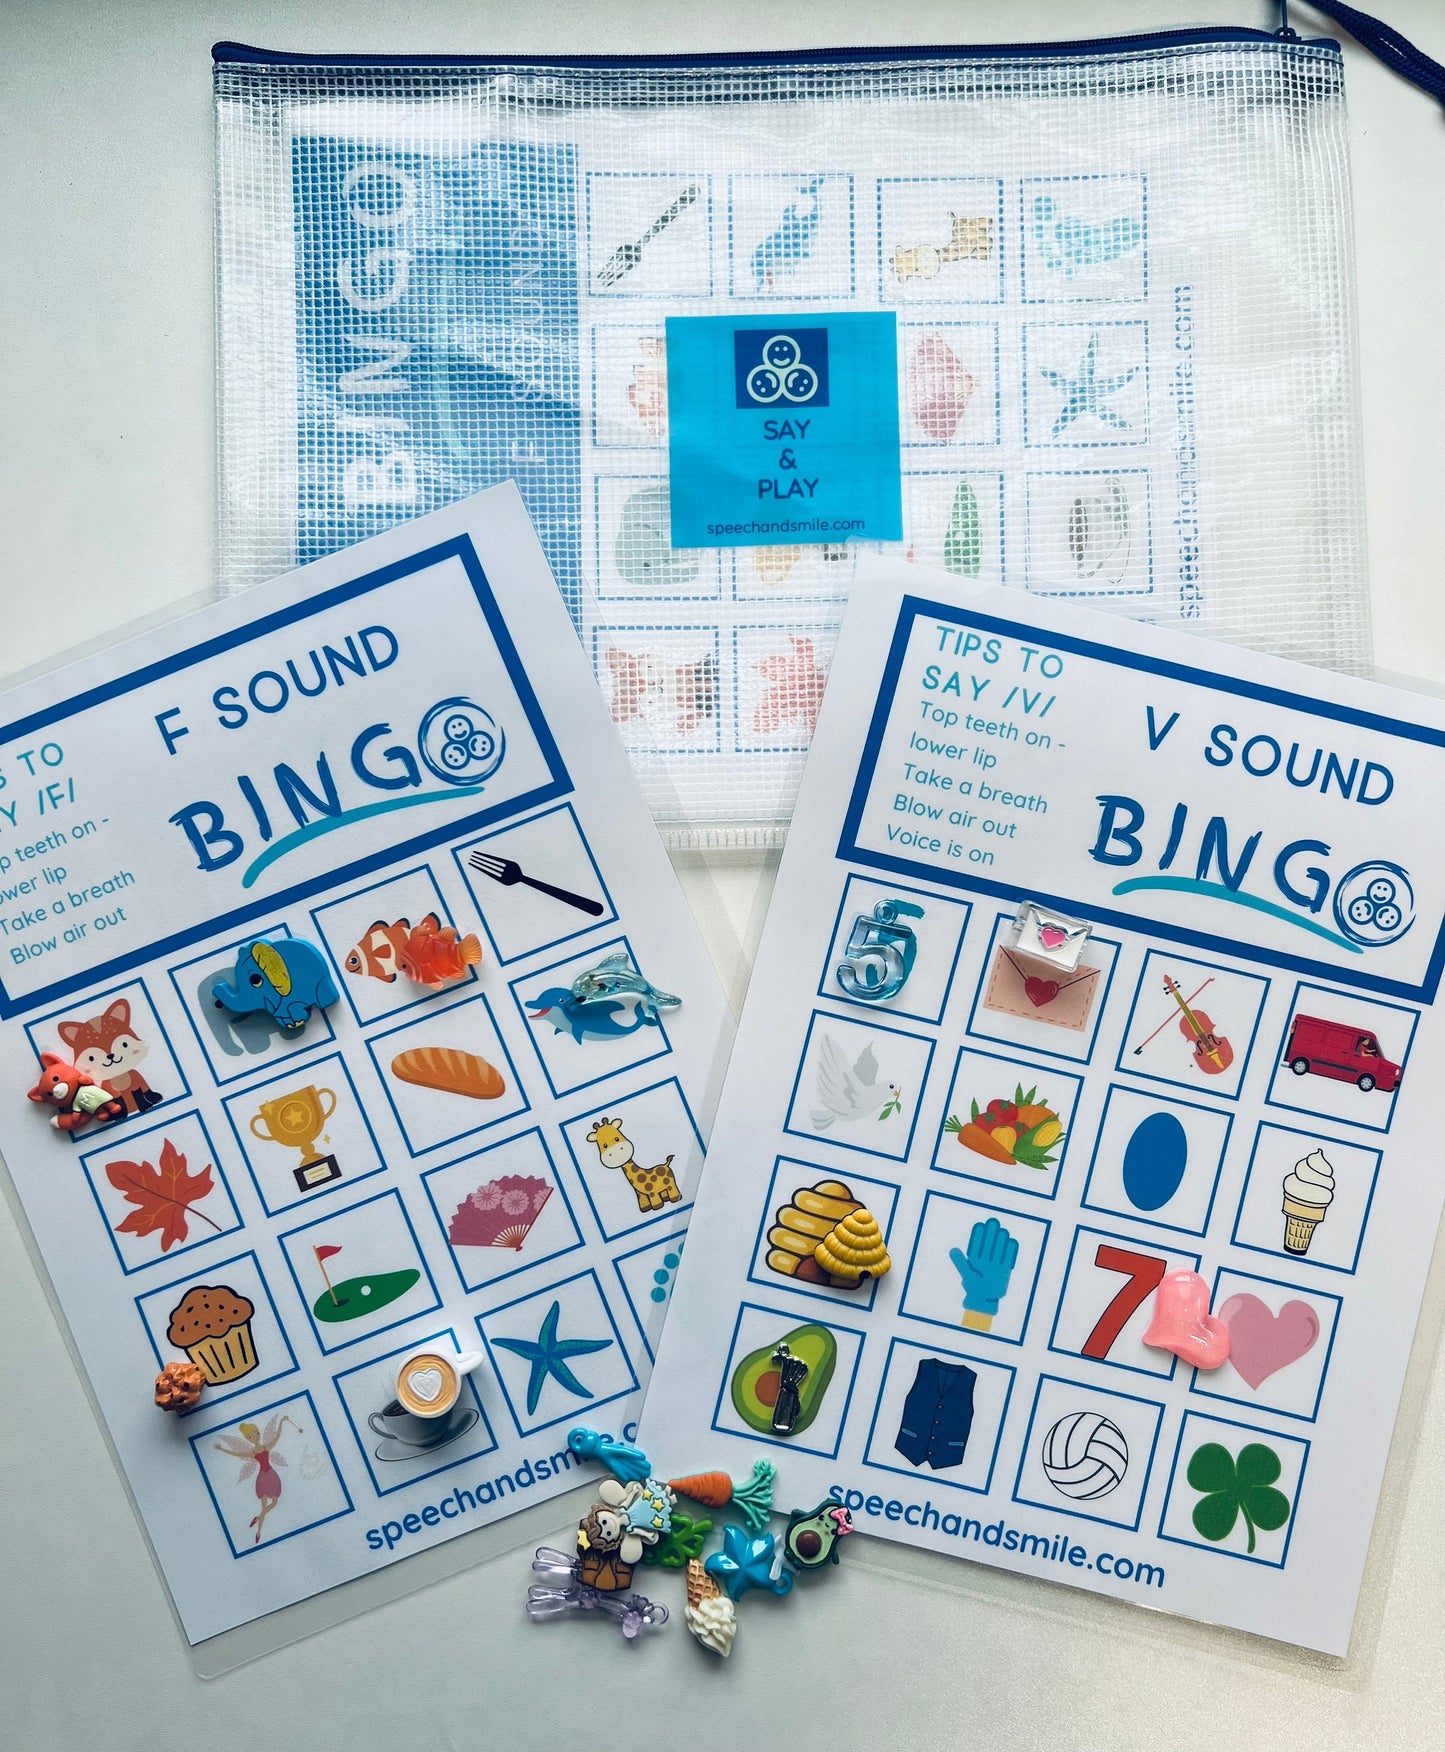 Bingo pour l’orthophonie-Sons de la parole correspondant à l’activité-Choisissez vos sons-Sons de la parole Bingo-Sons de la parole-Activité sonore de la parole SLP